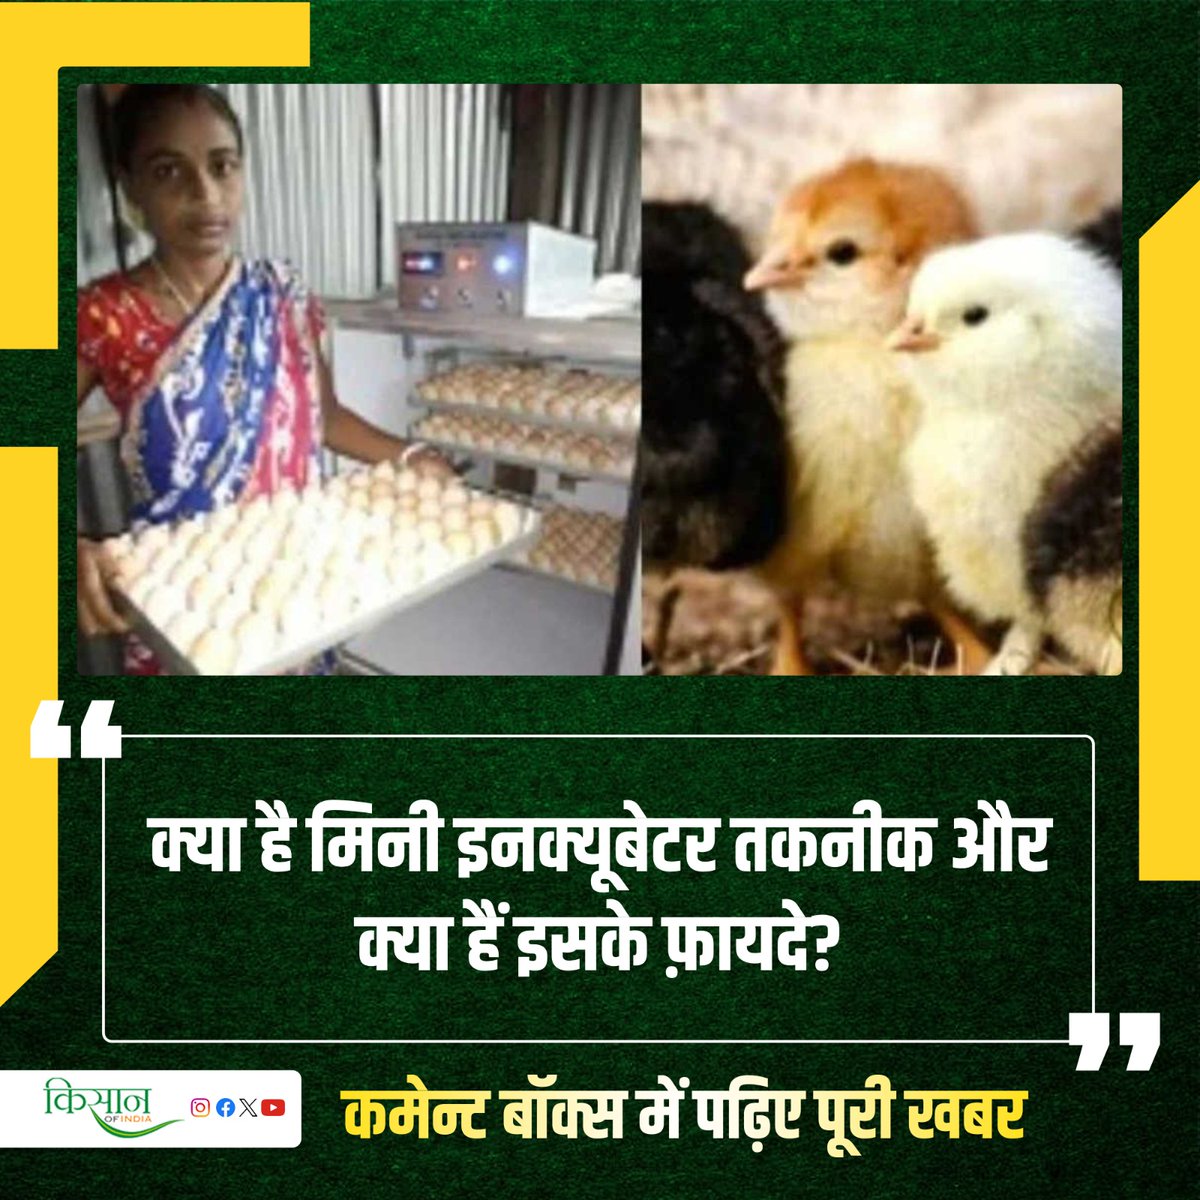 क्या आप मुर्गी पालन व्यवसाय कर रहे हैं? तो मिनी इनक्यूबेटर तकनीक से आपके व्यवसाय को मिल सकती है रफ़्तार
#PoultryFarming #KisanOfIndia #Agriculture #Farming #MiniIncubator #AndamanNicobar #PoultryBusiness